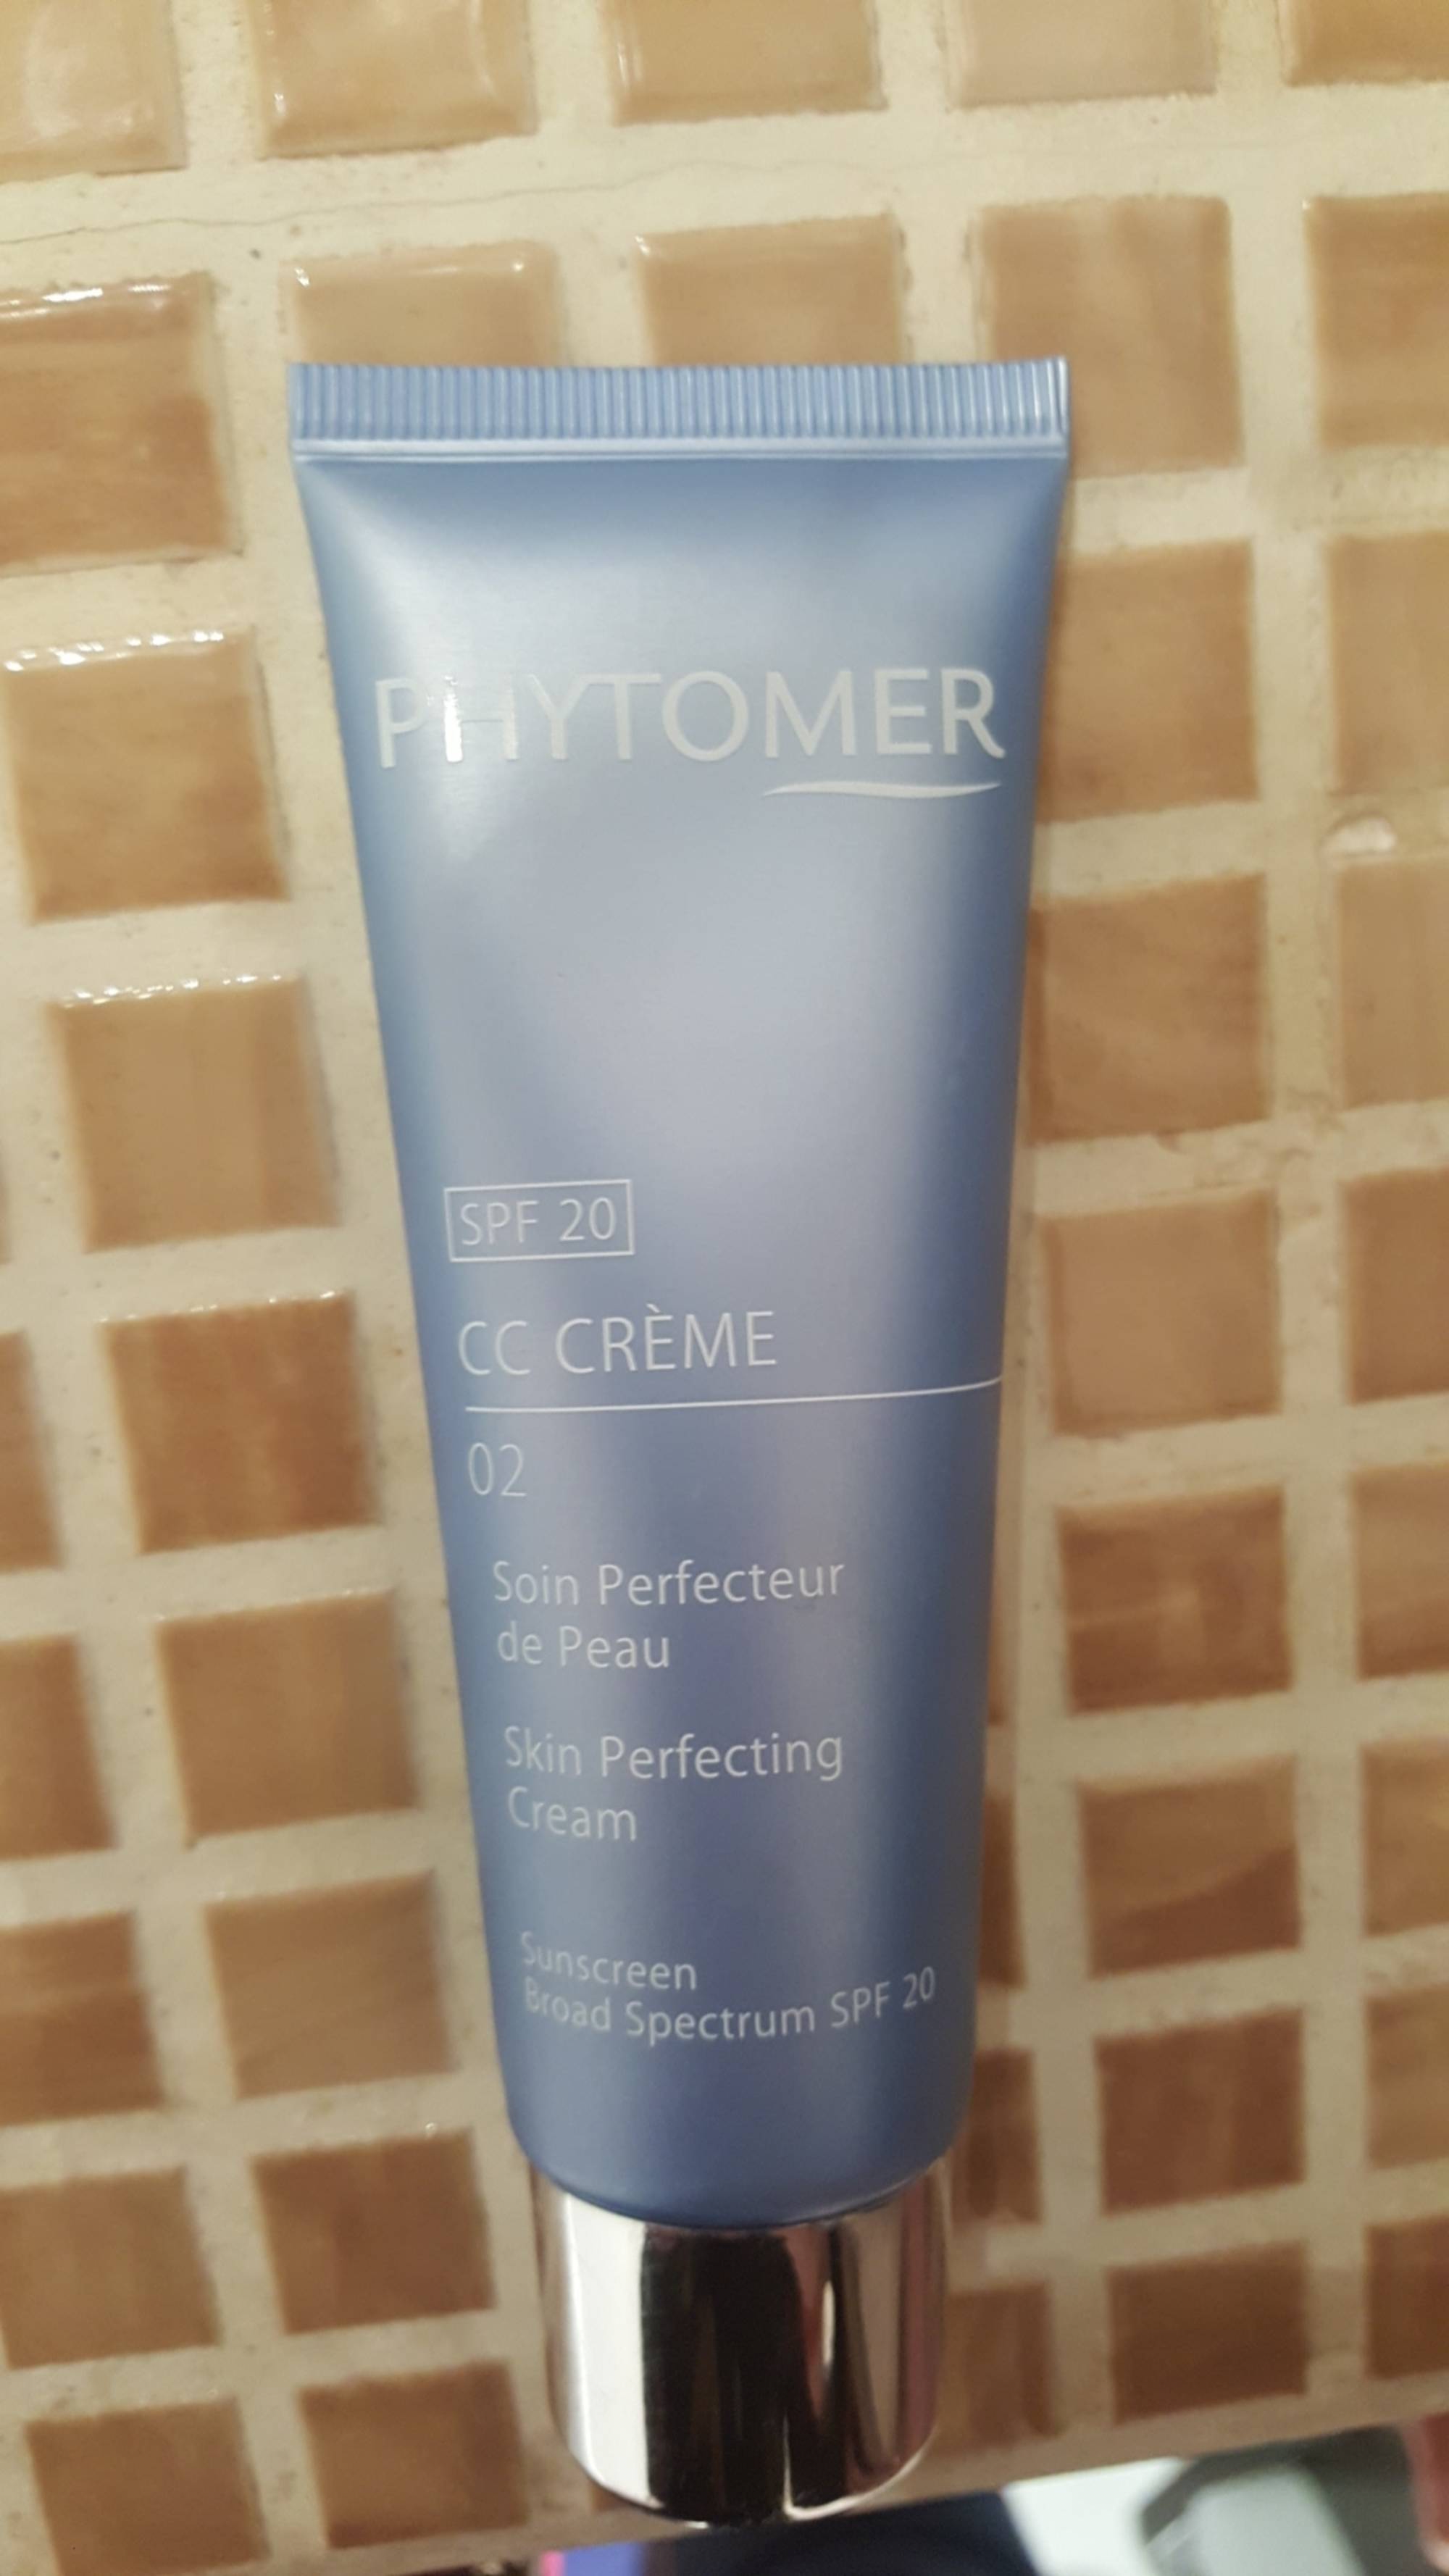 PHYTOMER - CC crème SPF 20 - Soin perfecteur de peau 02